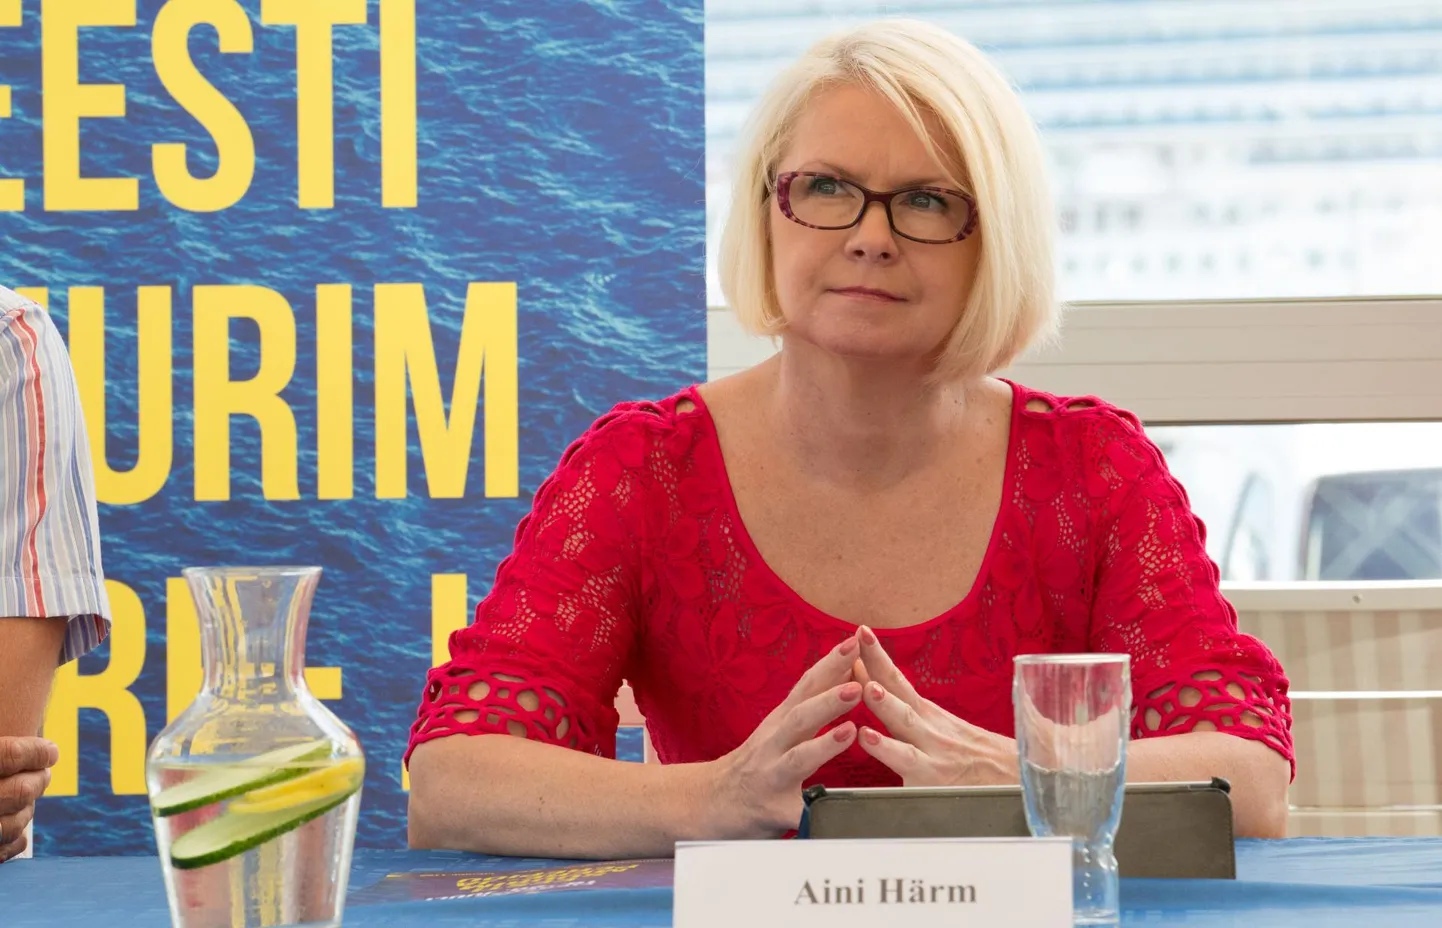 Руководитель Таллиннского департамента культуры Айни Хярм хочет получить компенсацию от своих подчиненных.